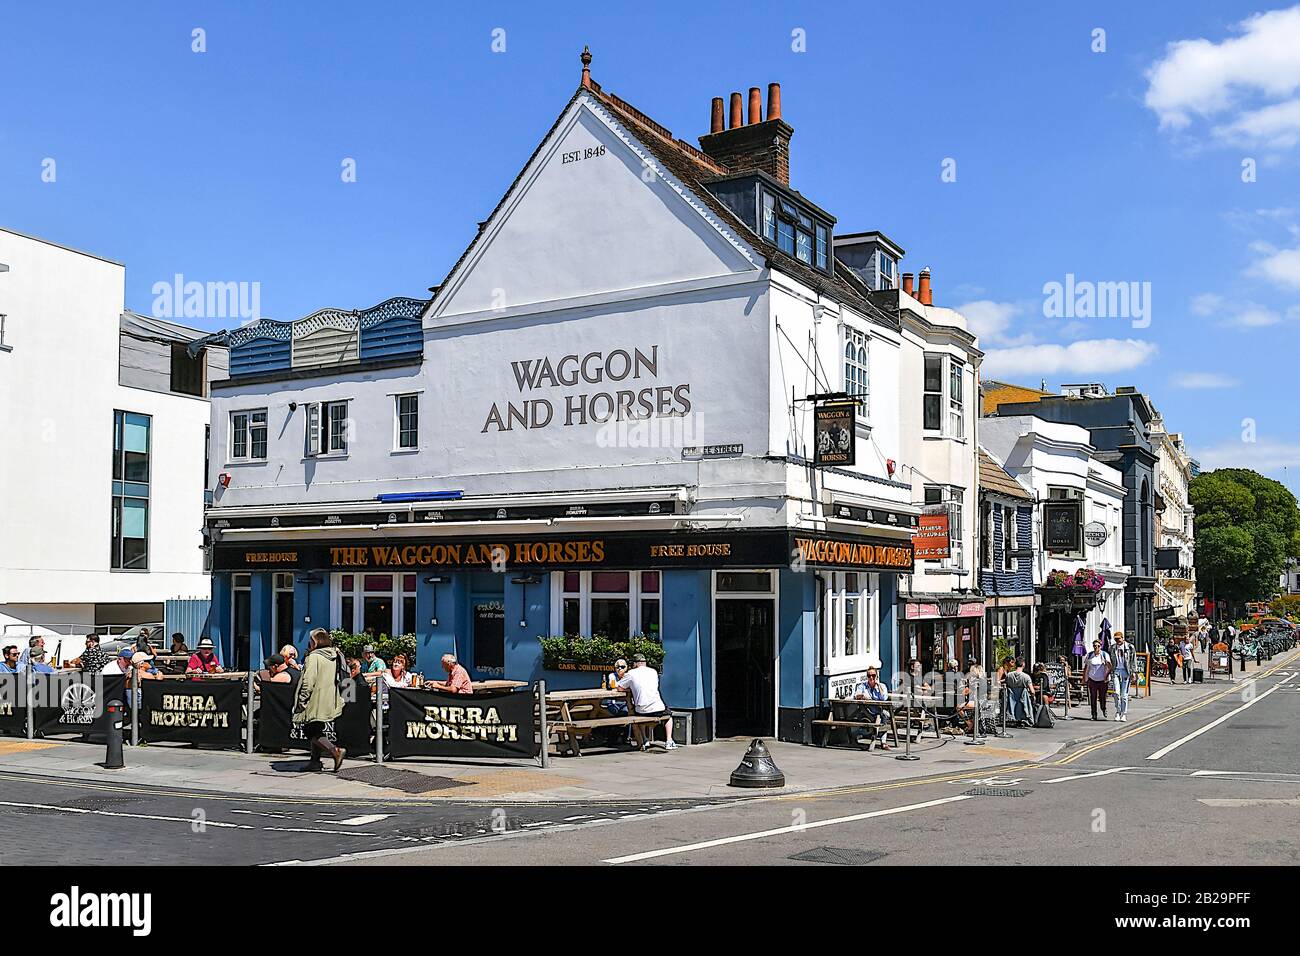 Exterior of pub, Brighton, East Sussex, England, UK Stock Photo